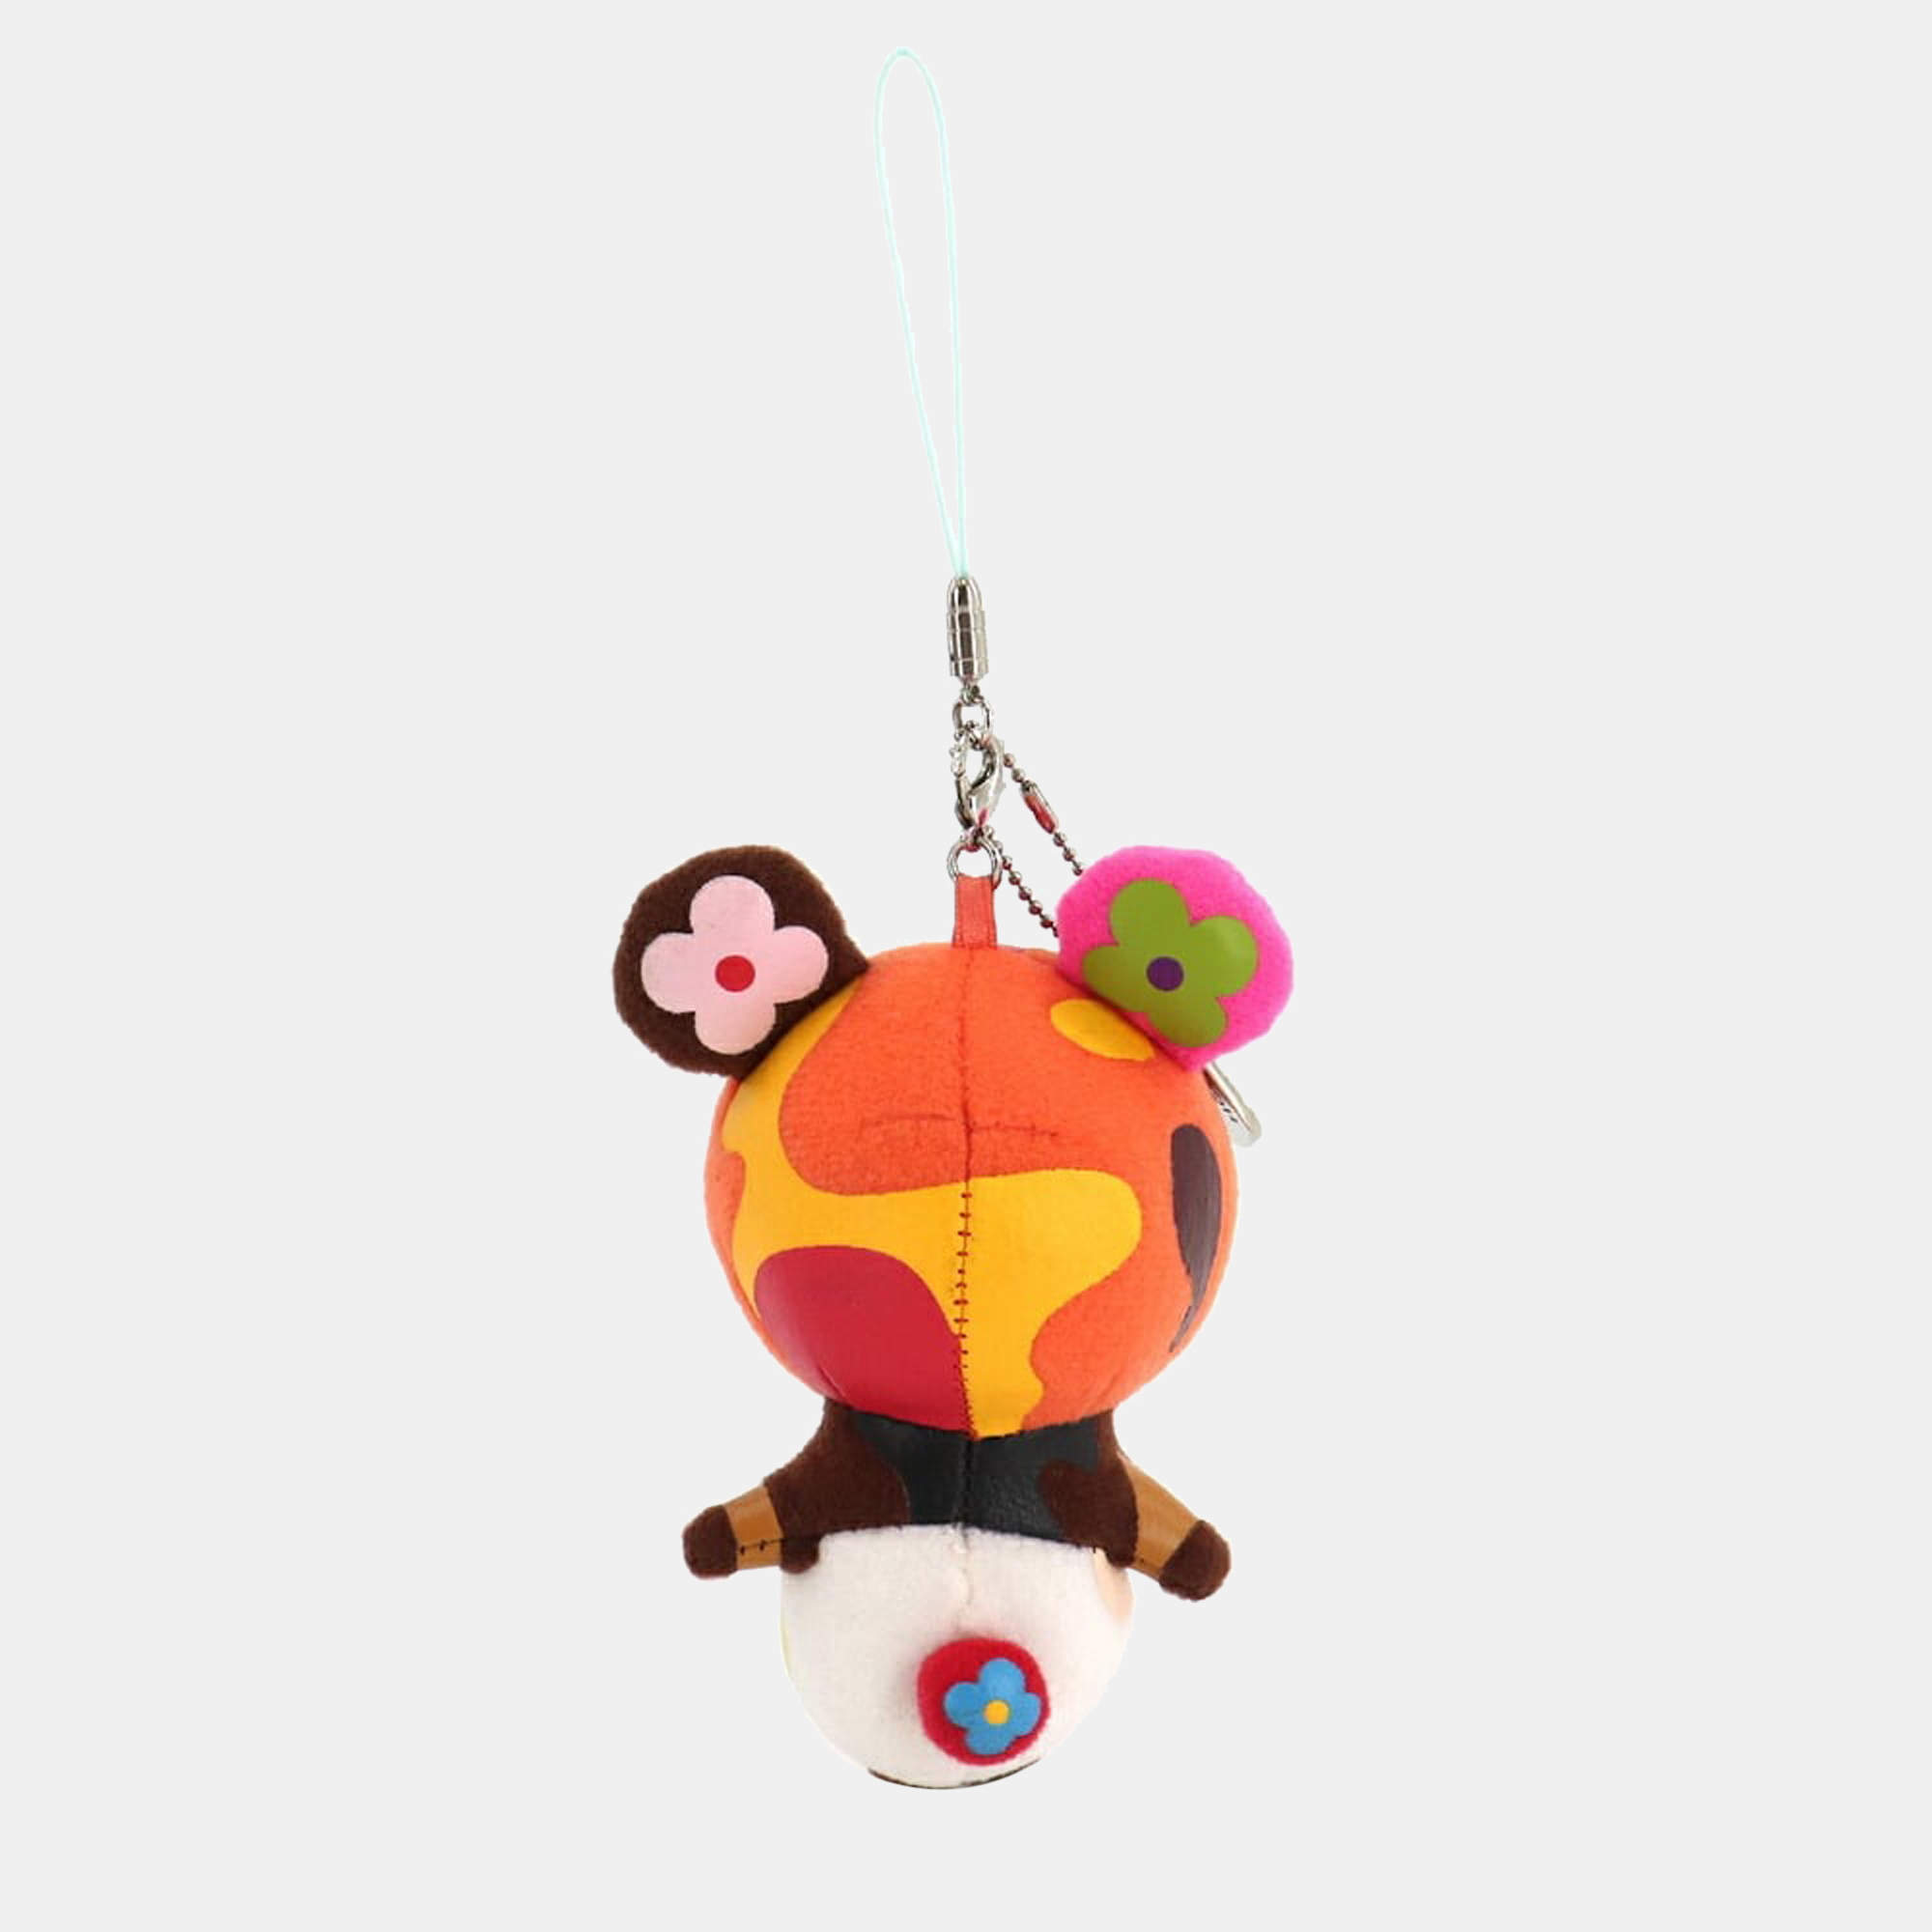 Louis Vuitton X Takashi Murakami Panda Key Chain Bag Charm – Fancy Lux